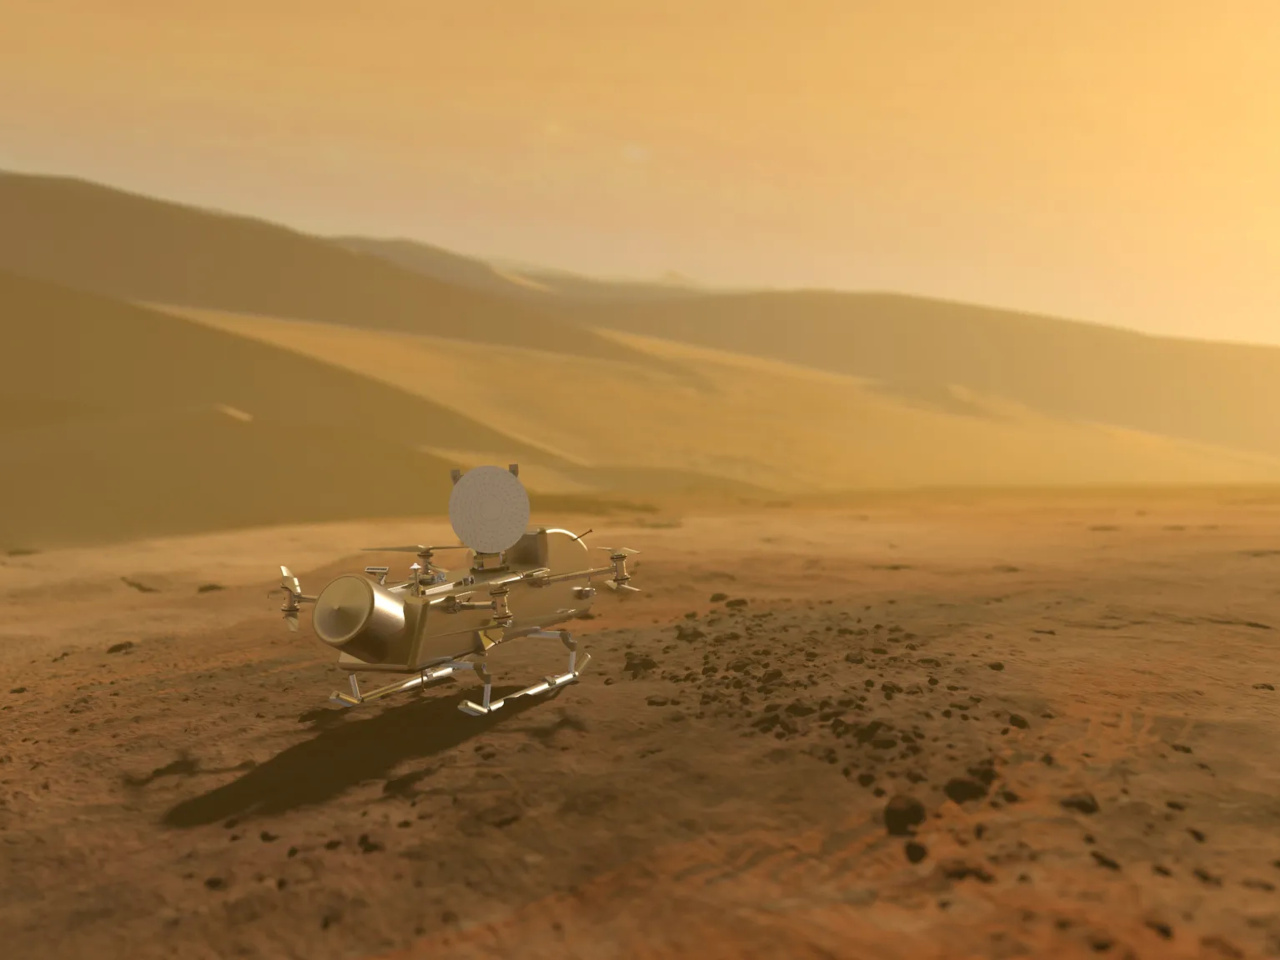 土星の衛星「タイタン」探査、打ち上げを1年延期--回転翼で大気圏を飛行